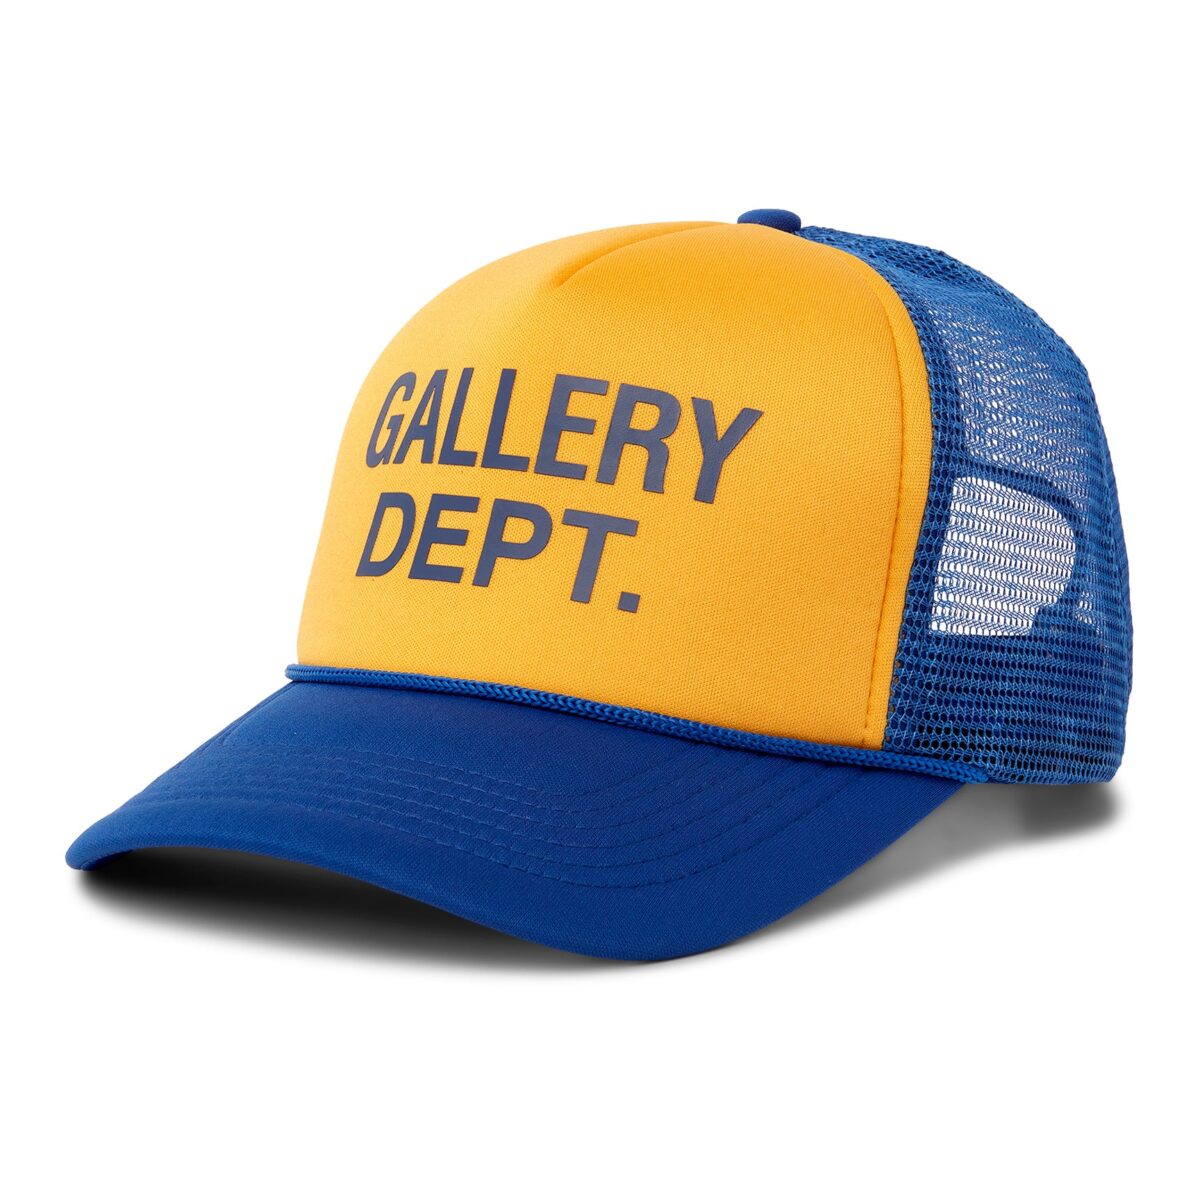 Gallery Dept Logo Trucker